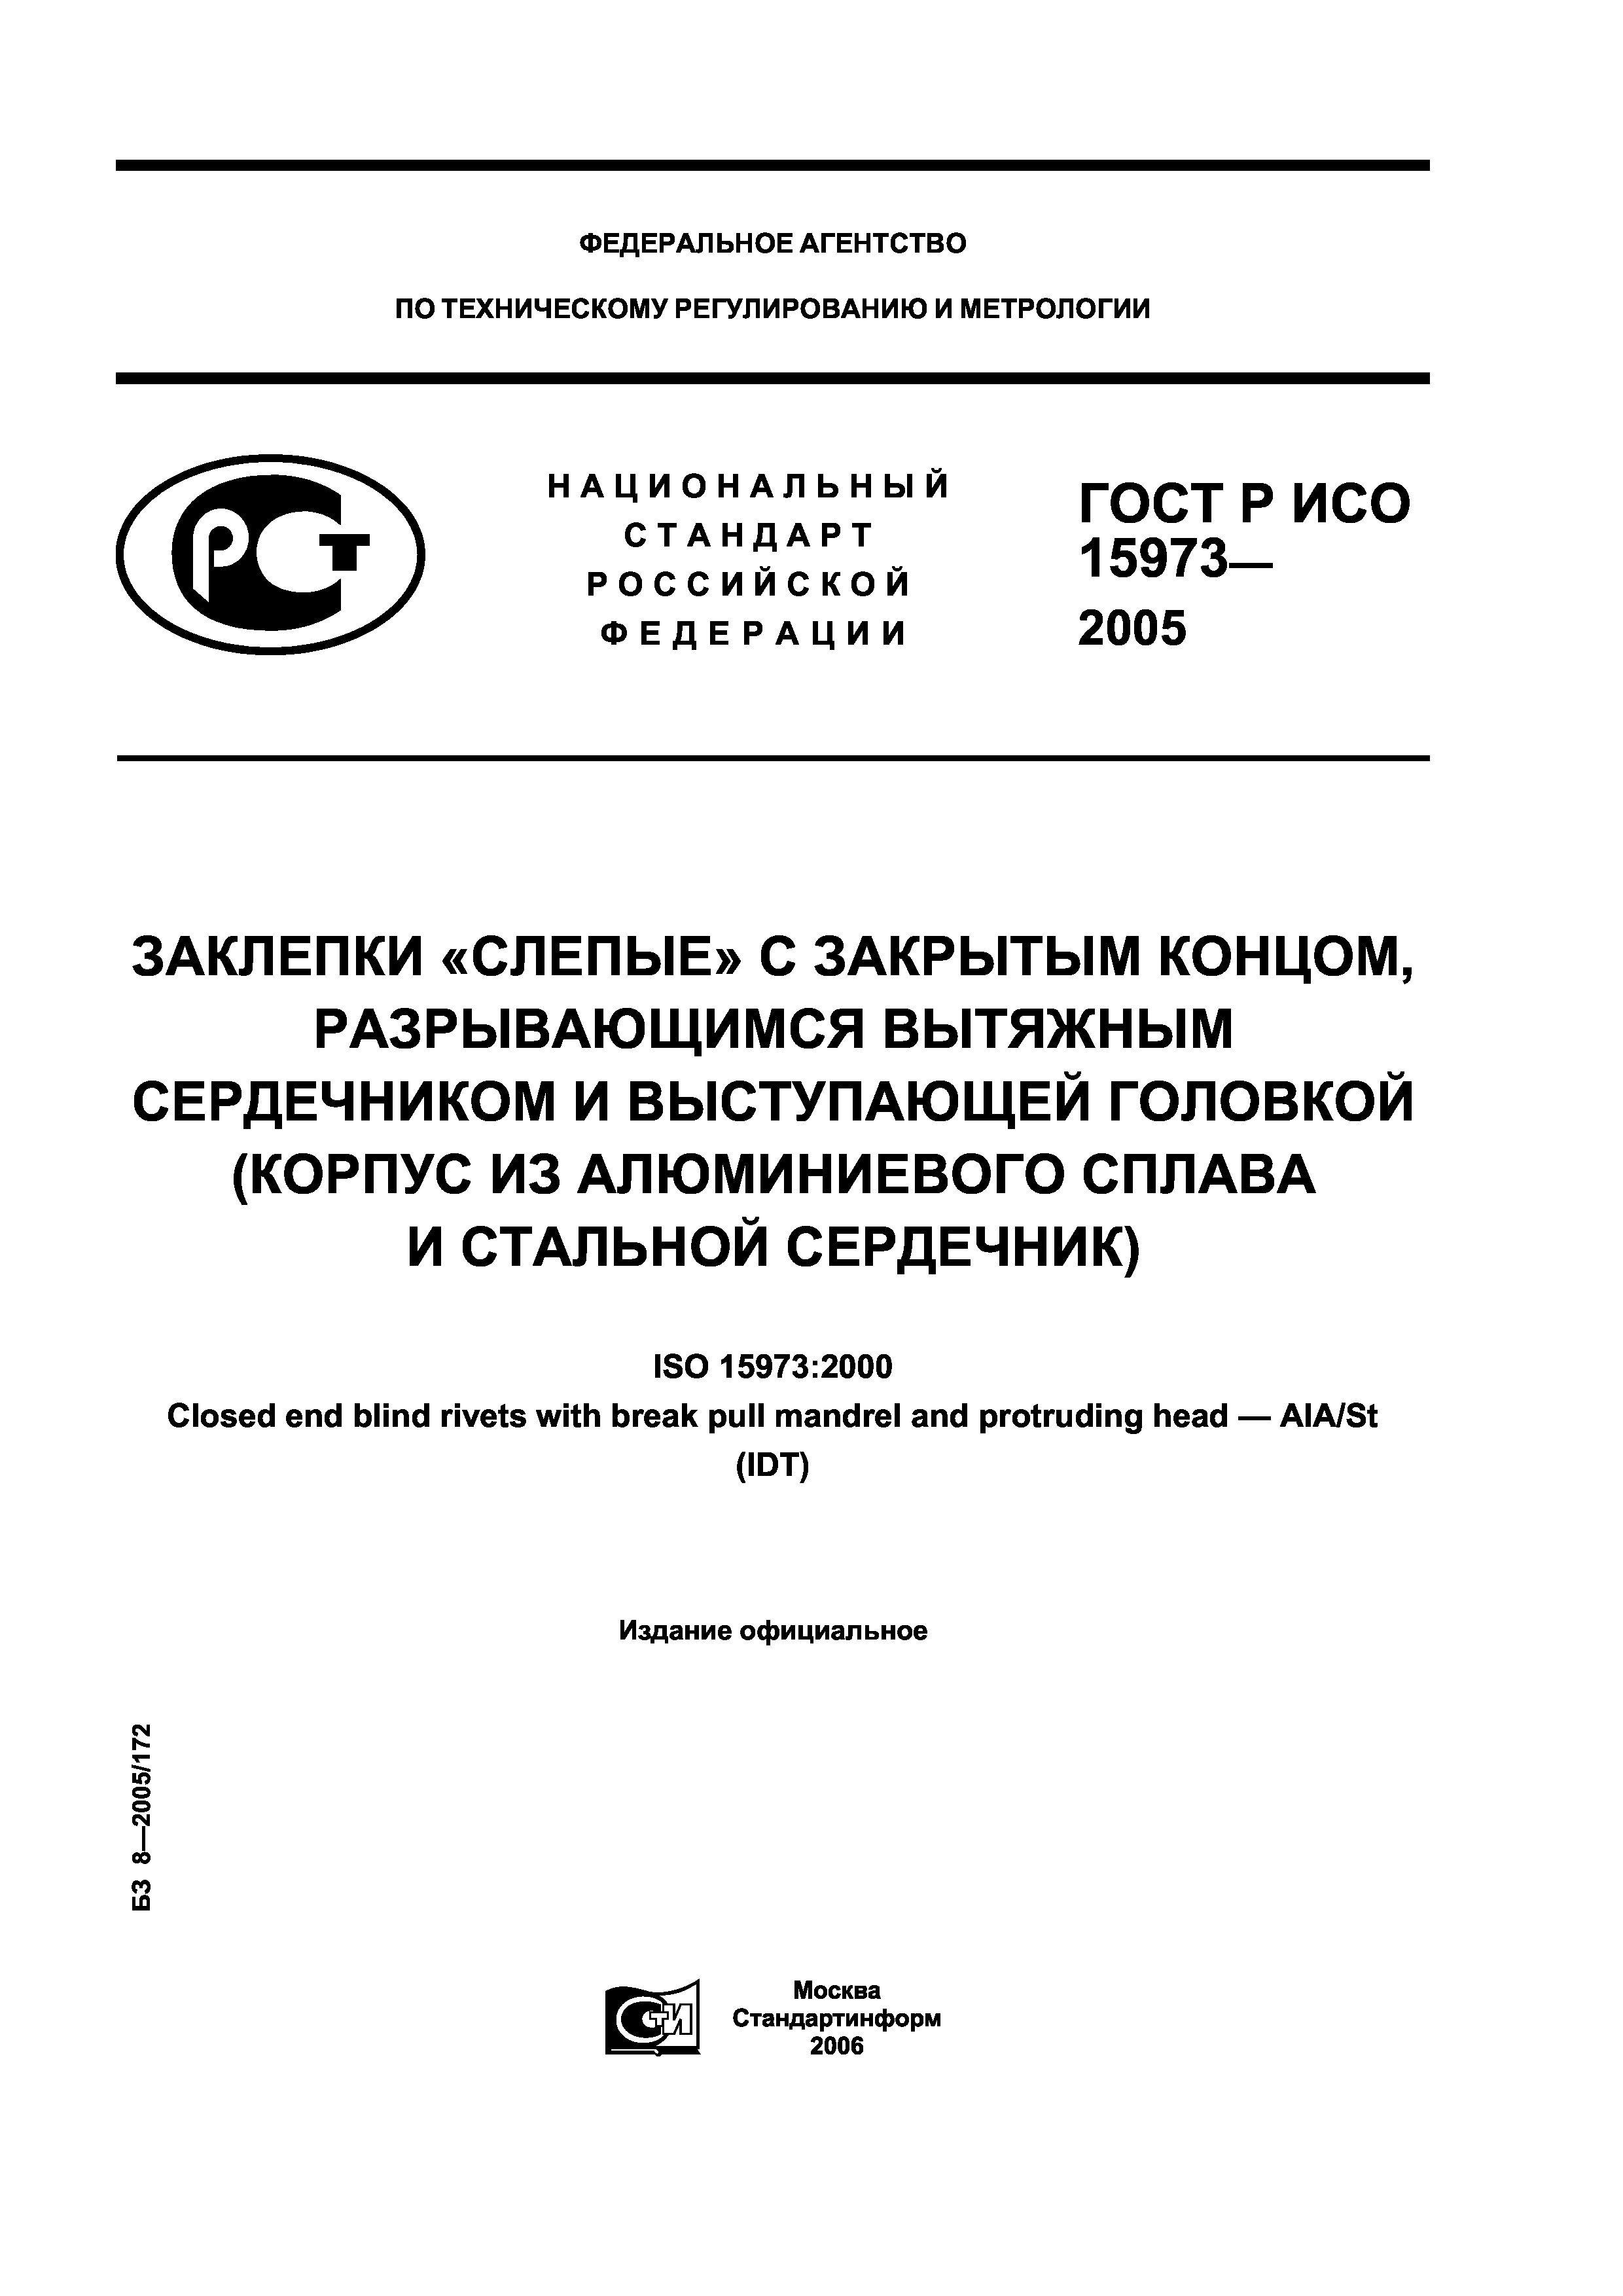 ГОСТ Р ИСО 15973-2005